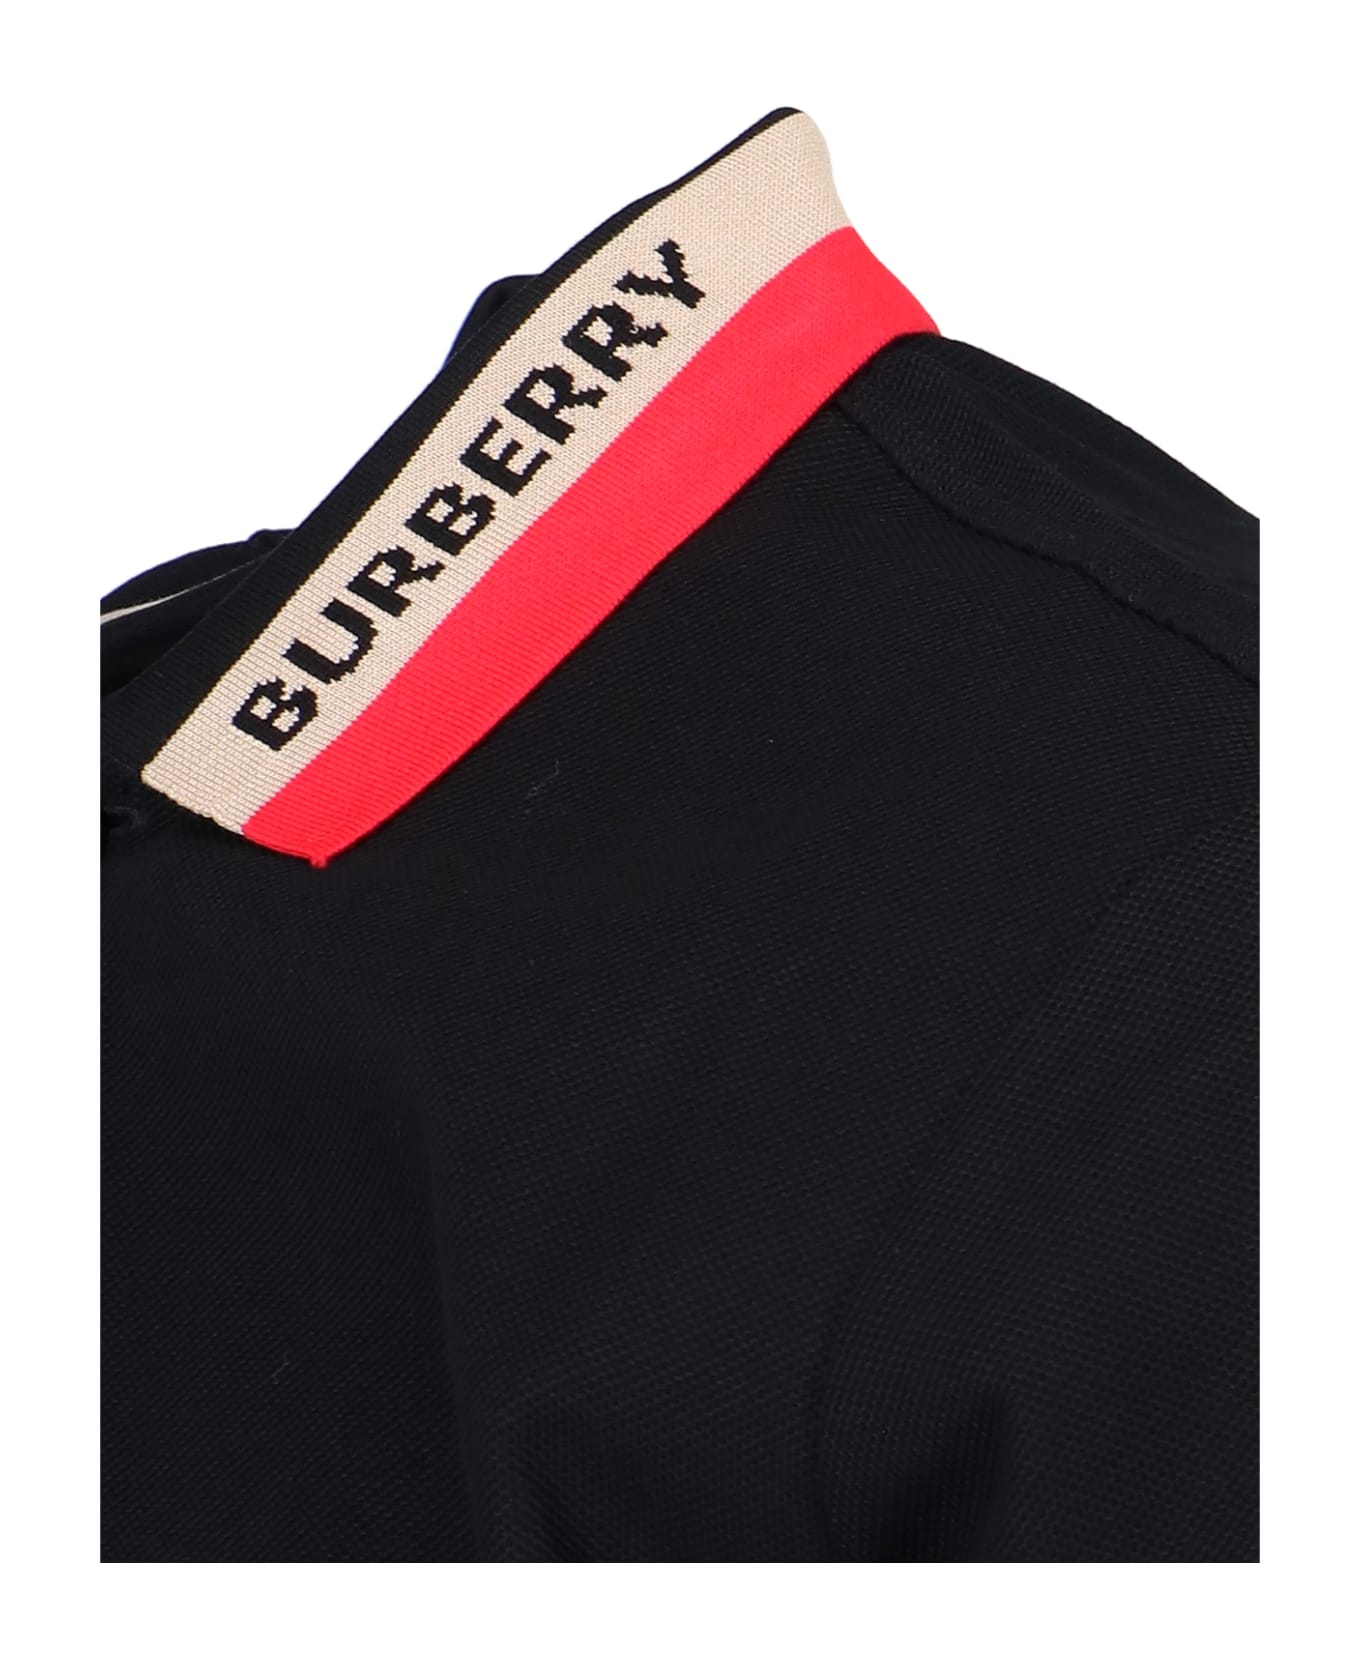 Burberry Black Piquet Polo Shirt - Black